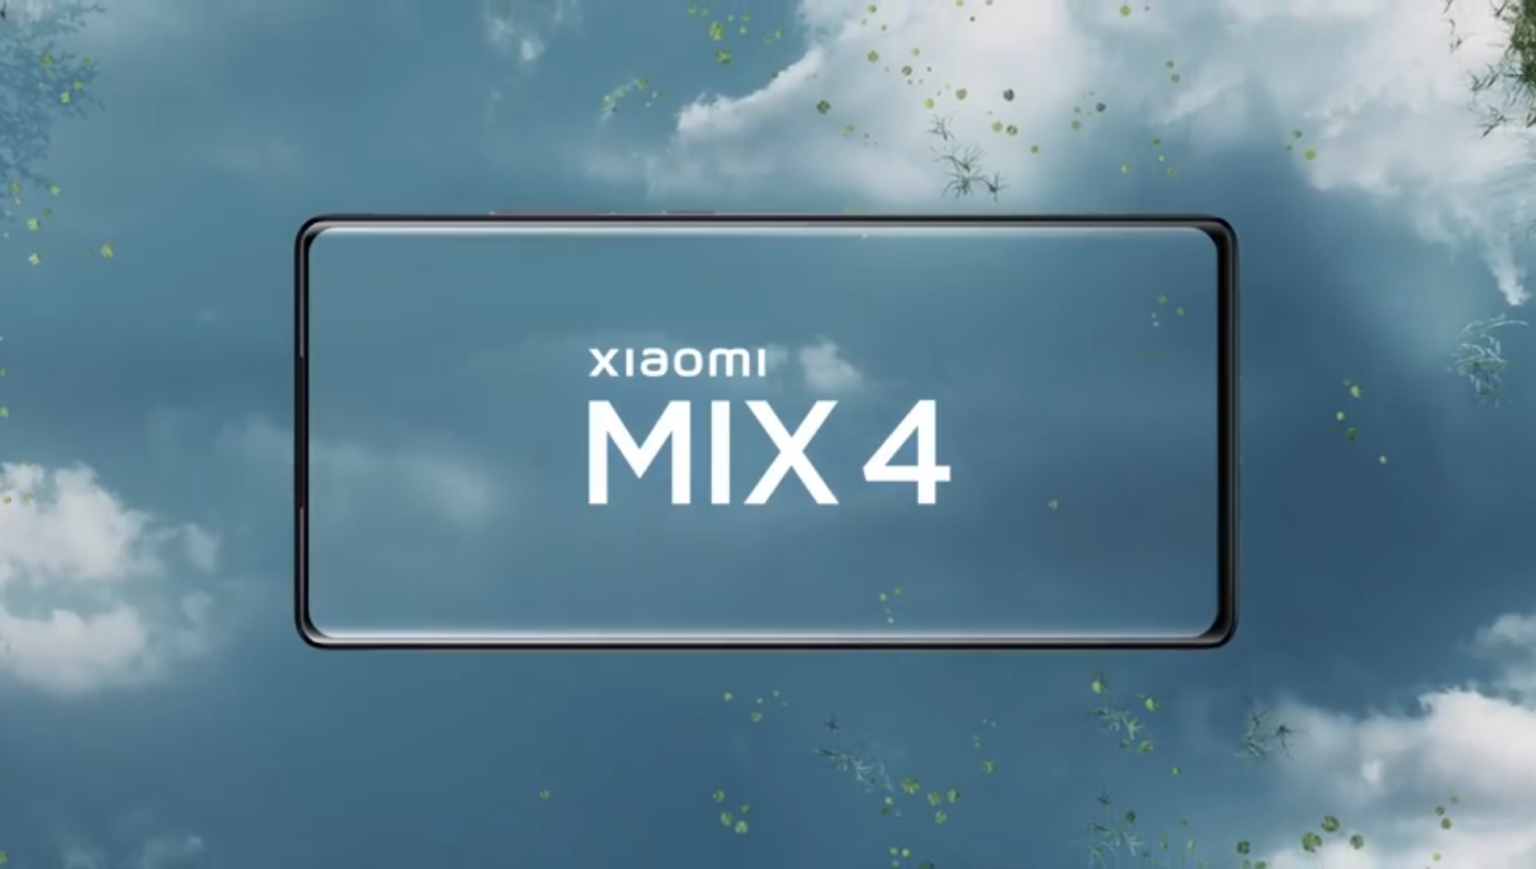 Ціна Xiaomi Mi Mix 4 стала відома за лічені години до презентації